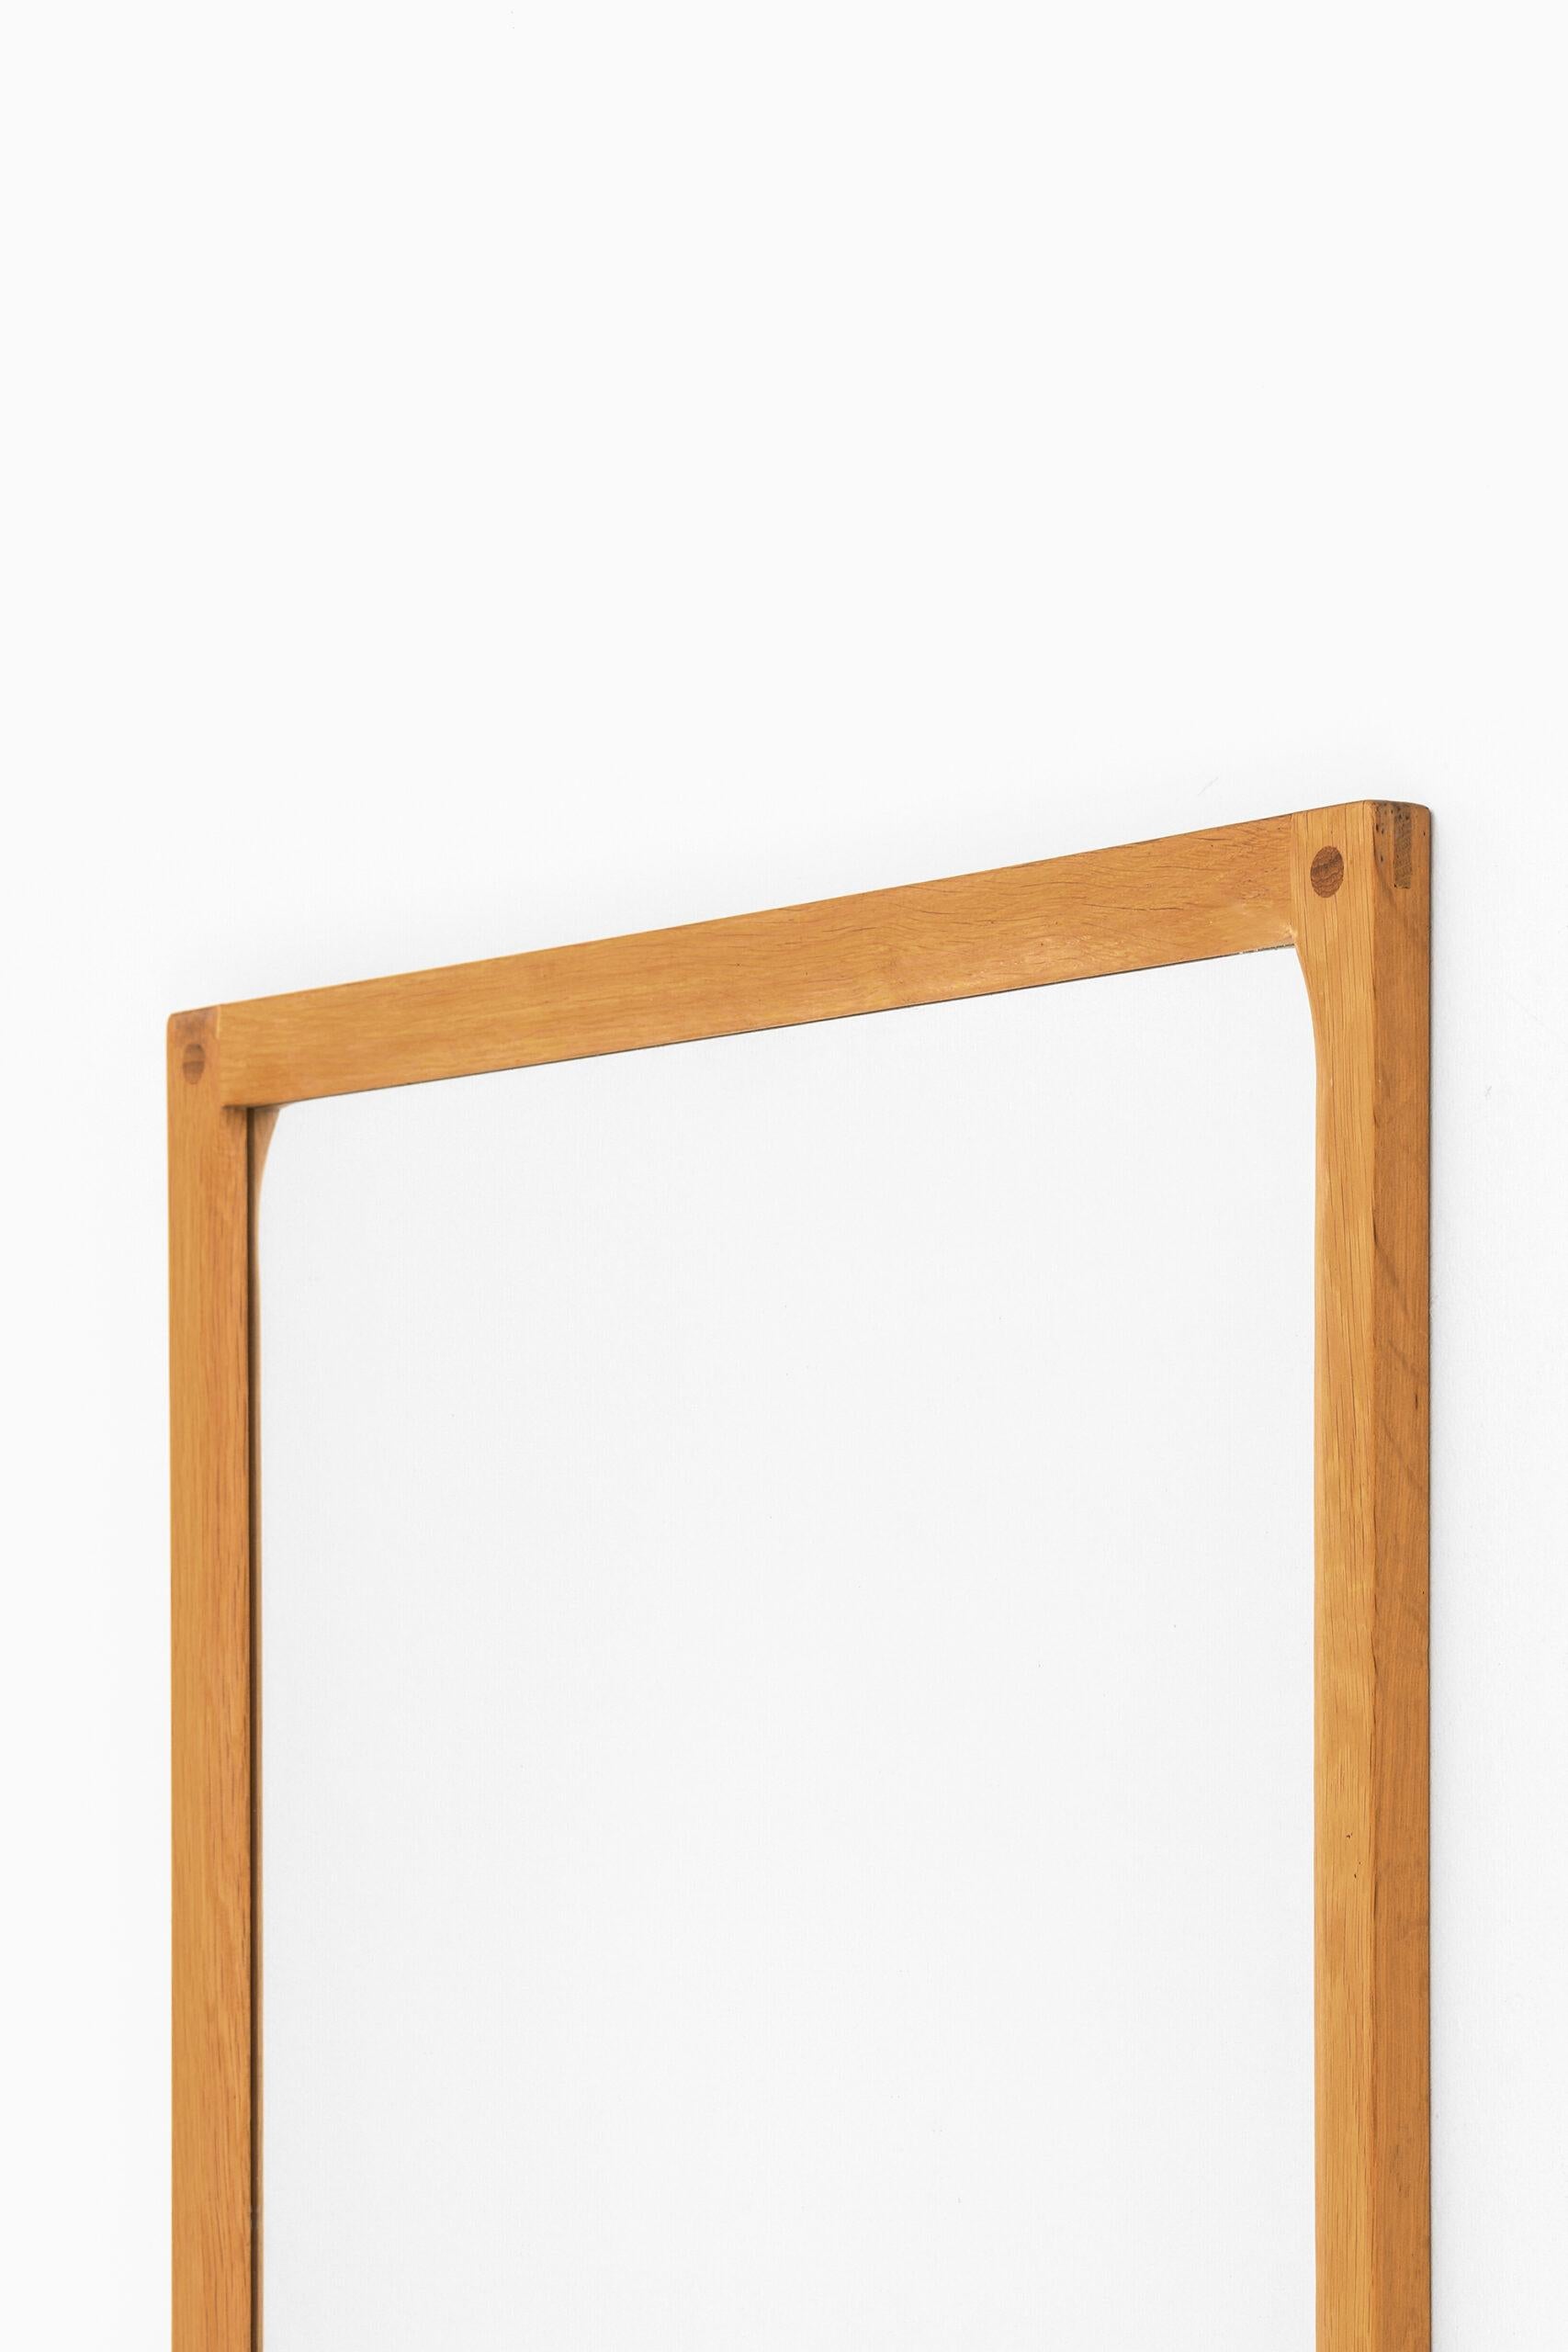 Mirror in oak designed by Kai Kristiansen. Produced by Aksel Kjersgaard in Denmark.